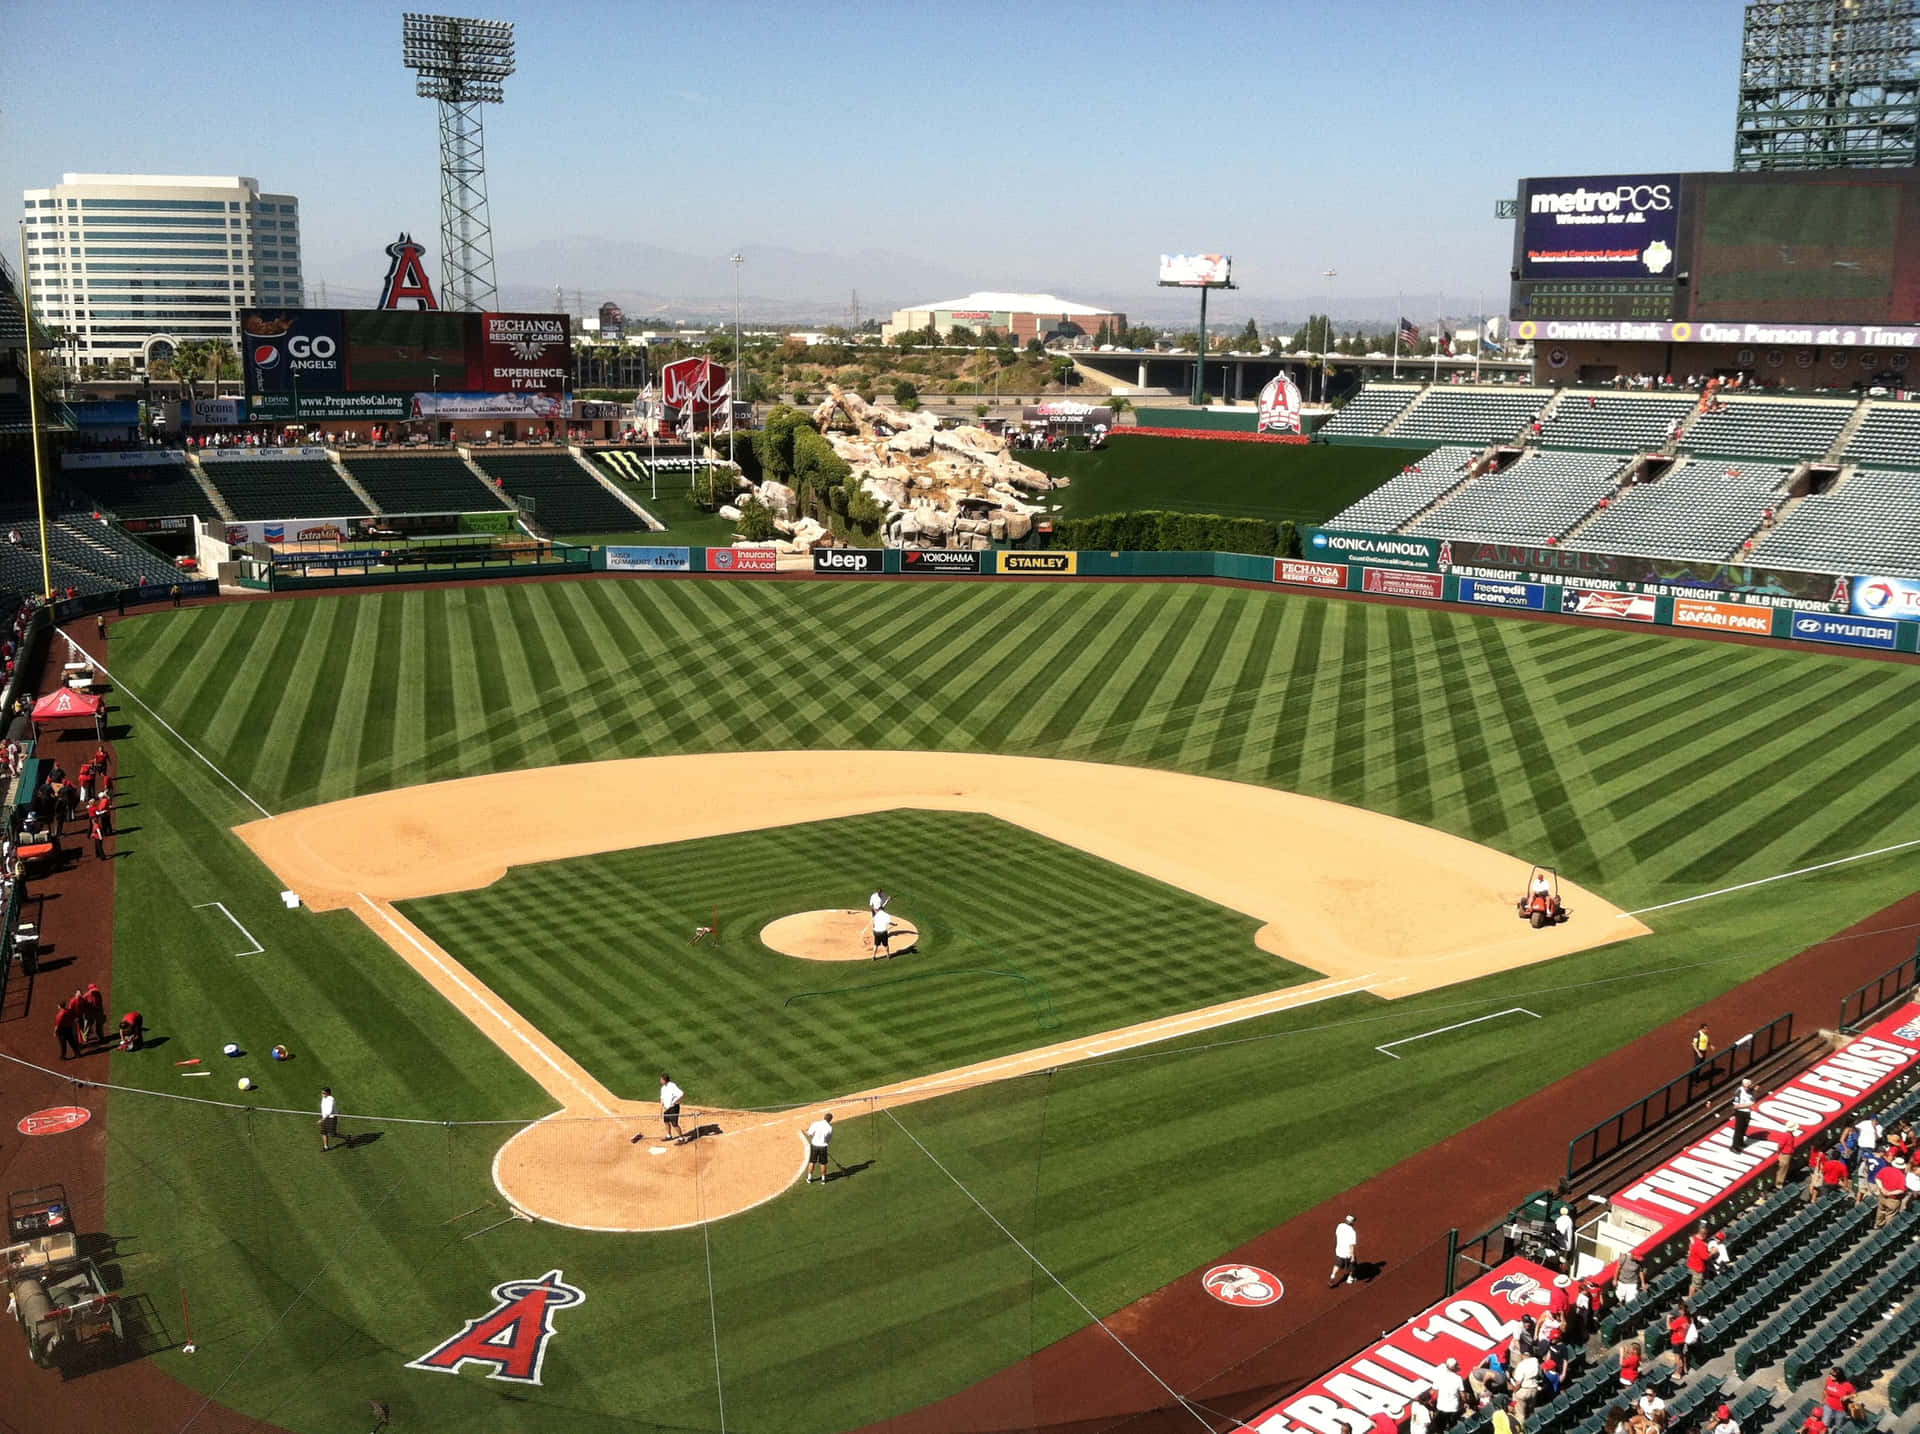 Hintergrundbilddes Baseballplatzes Angel Stadium Of Anaheim In Landschaftsdarstellung